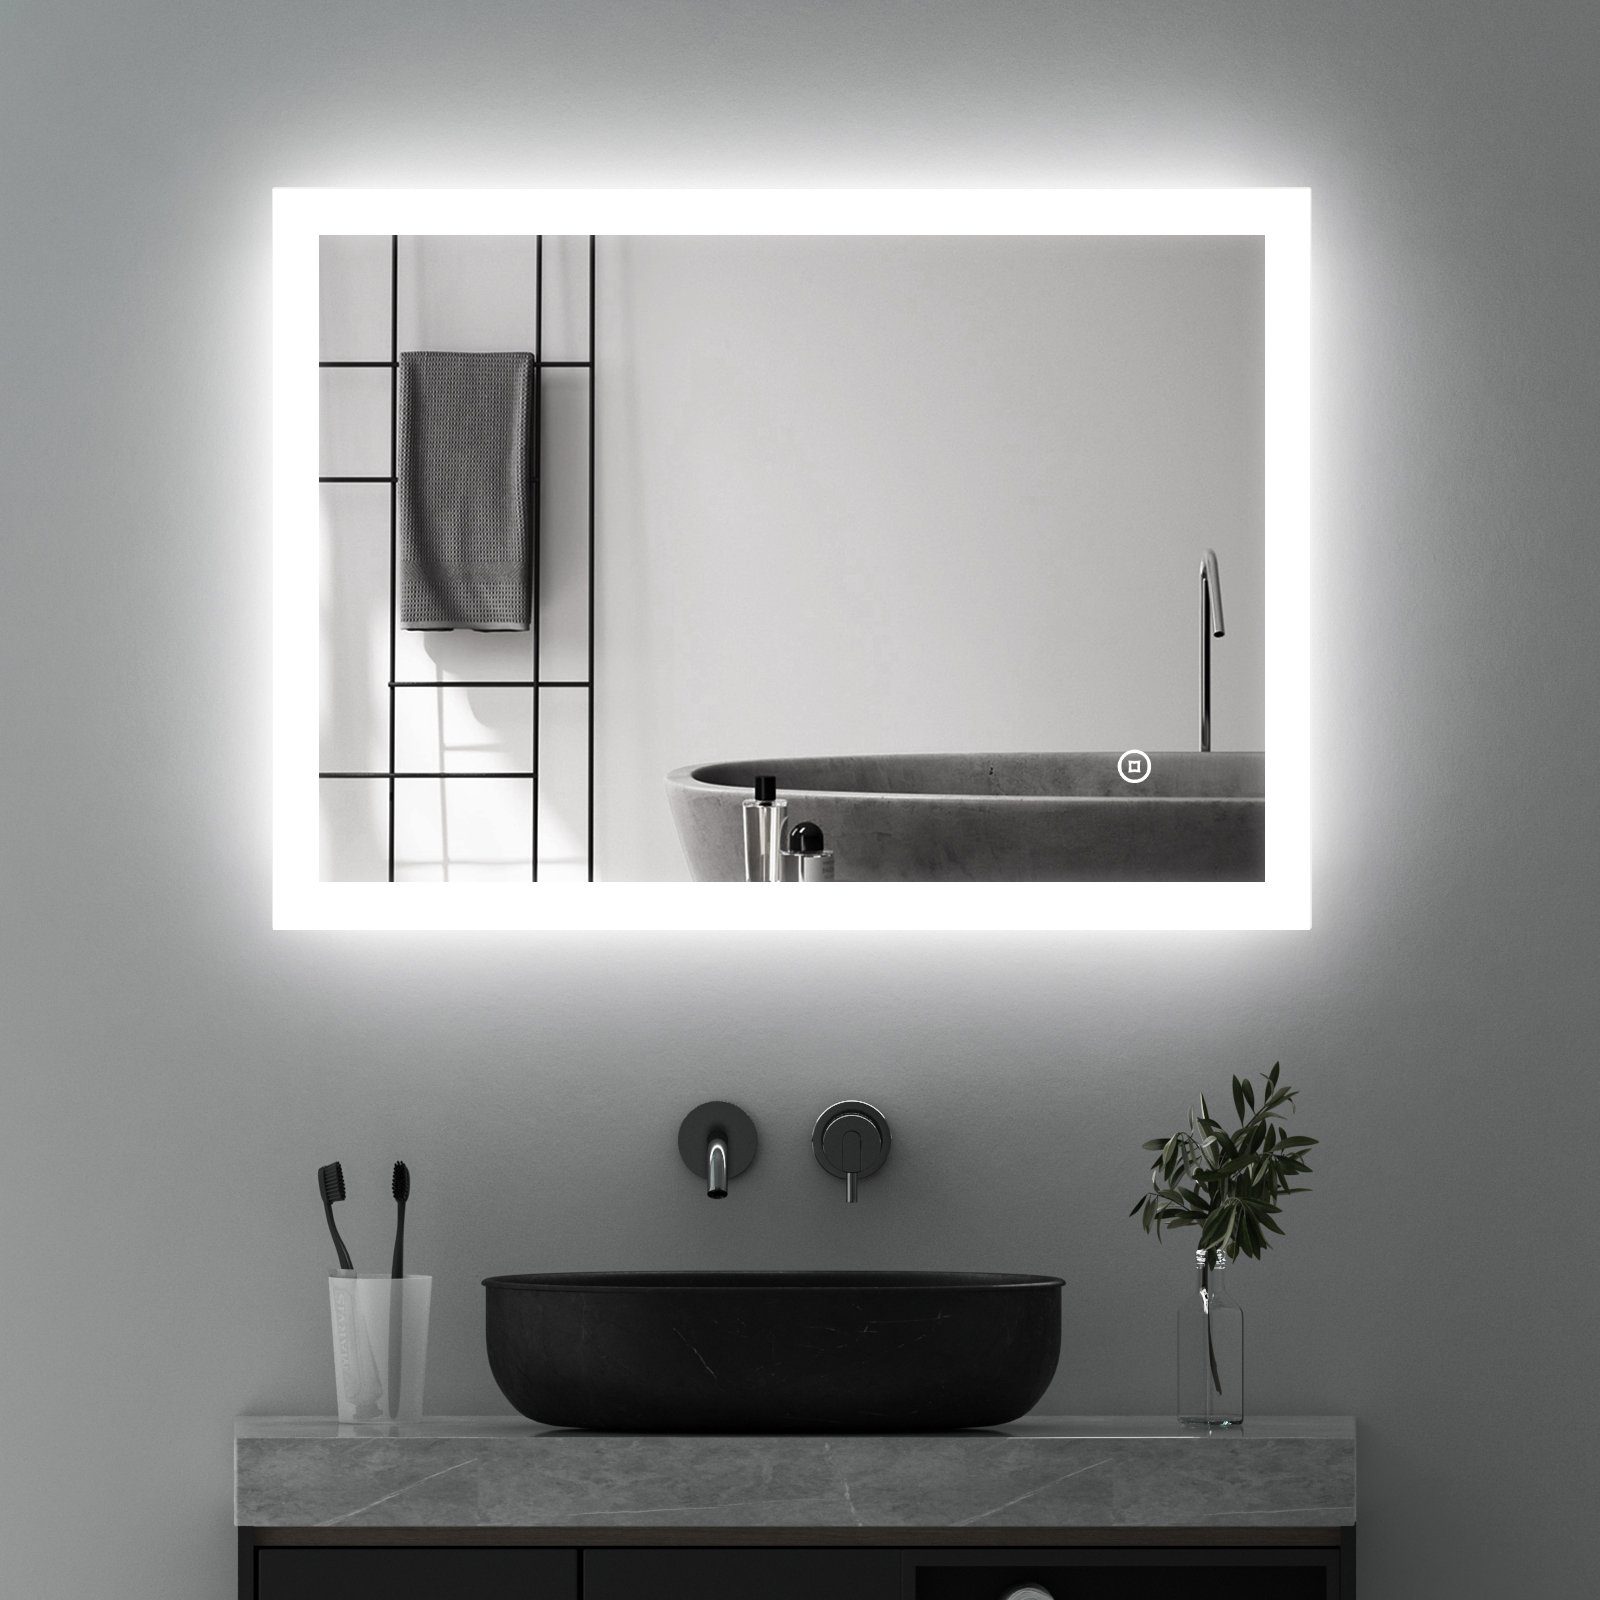 WDWRITTI Badspiegel Wandspiegel mit Beleuchtung, (Badezimmerspiegel Led Led, 3 Bad Spiegel Touch/Wandschalter), Lichtfarbe Helligkeit 80x60 dimmbar Lichtspiegel, energiesparender,IP44 Speicherfunktion